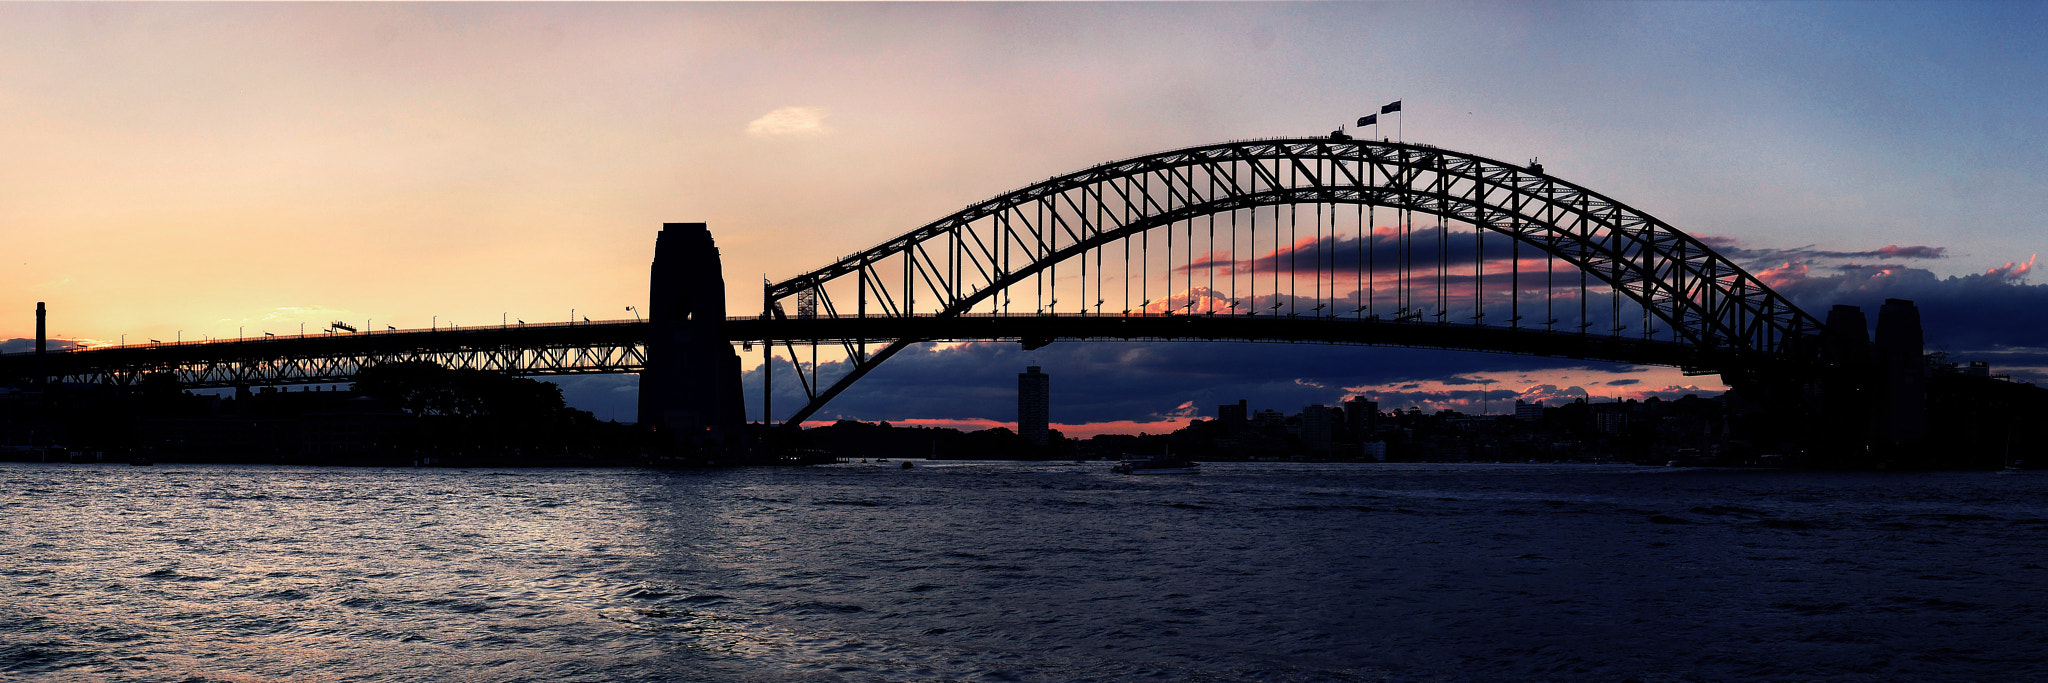 Panasonic Lumix DMC-G7 sample photo. Sydney's sunset photography